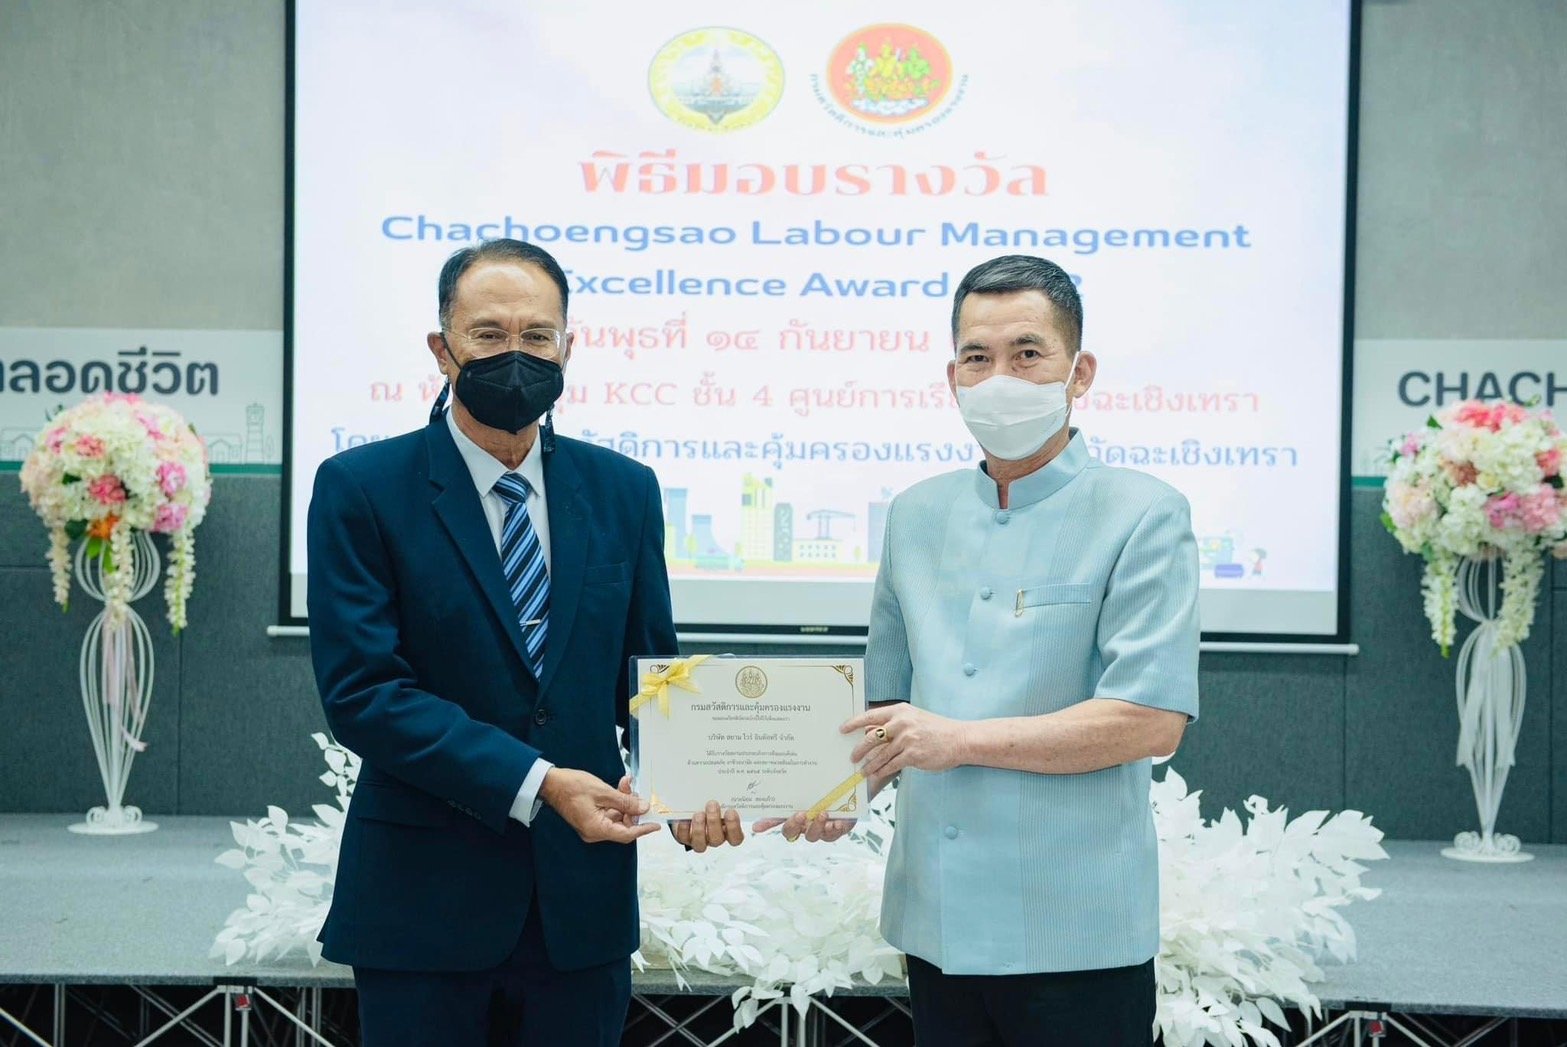 พิธีรับมอบรางวัล Chachoengsao Labour Management Excellence Award 2022 